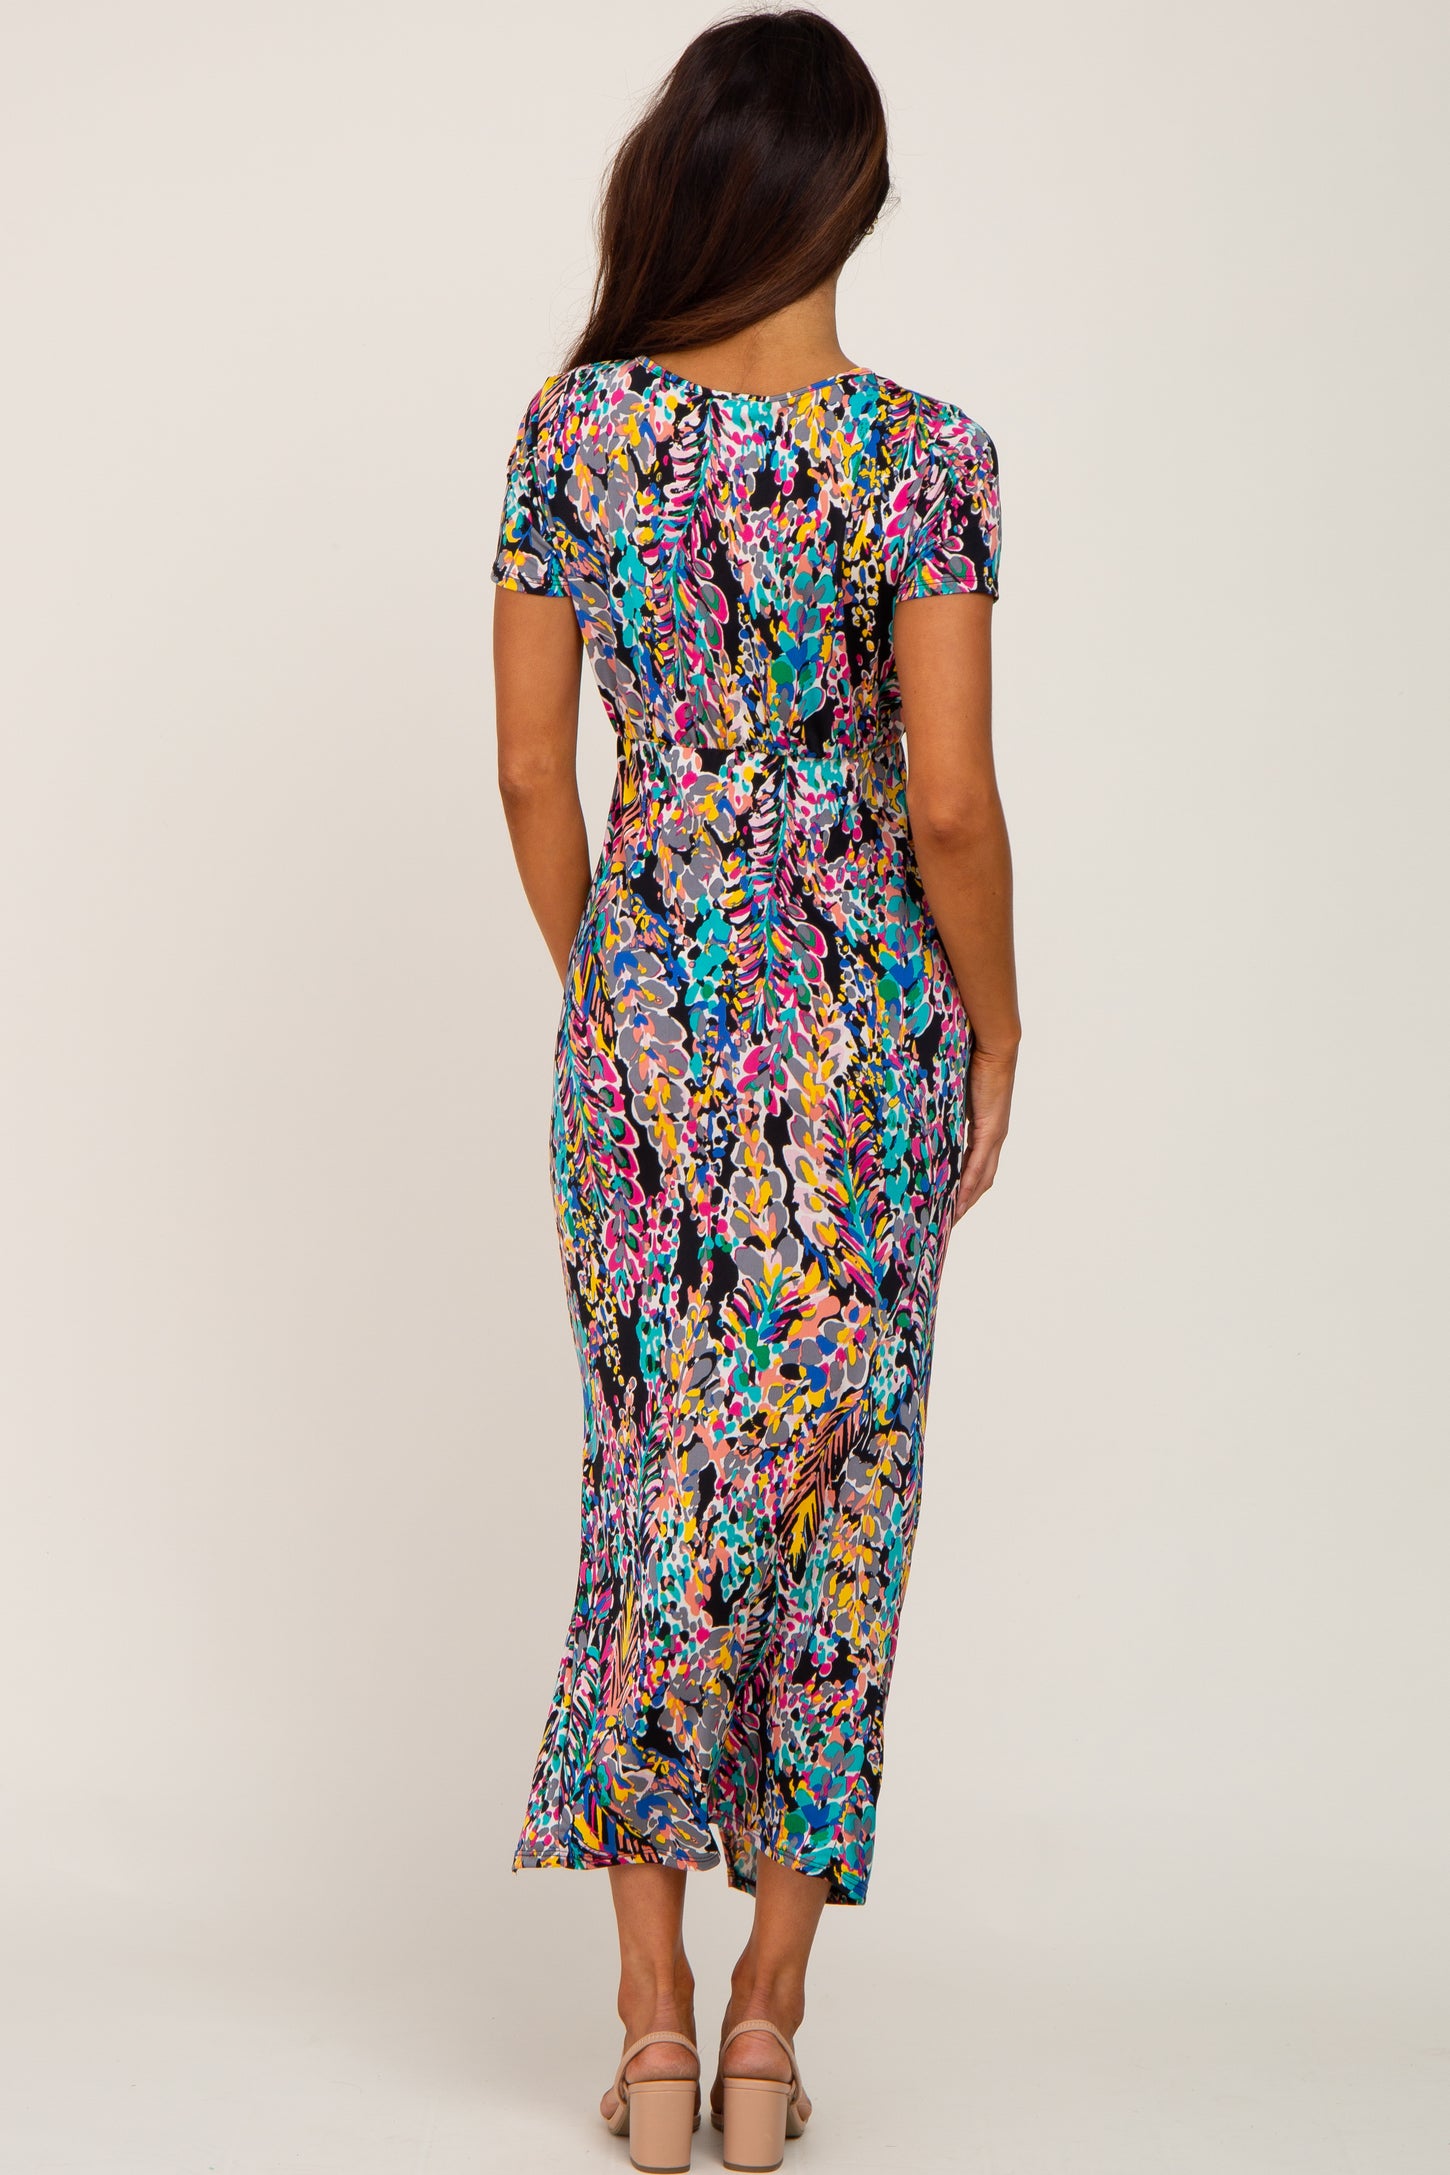 Black Multi-Color Floral Side Slit Maxi Dress